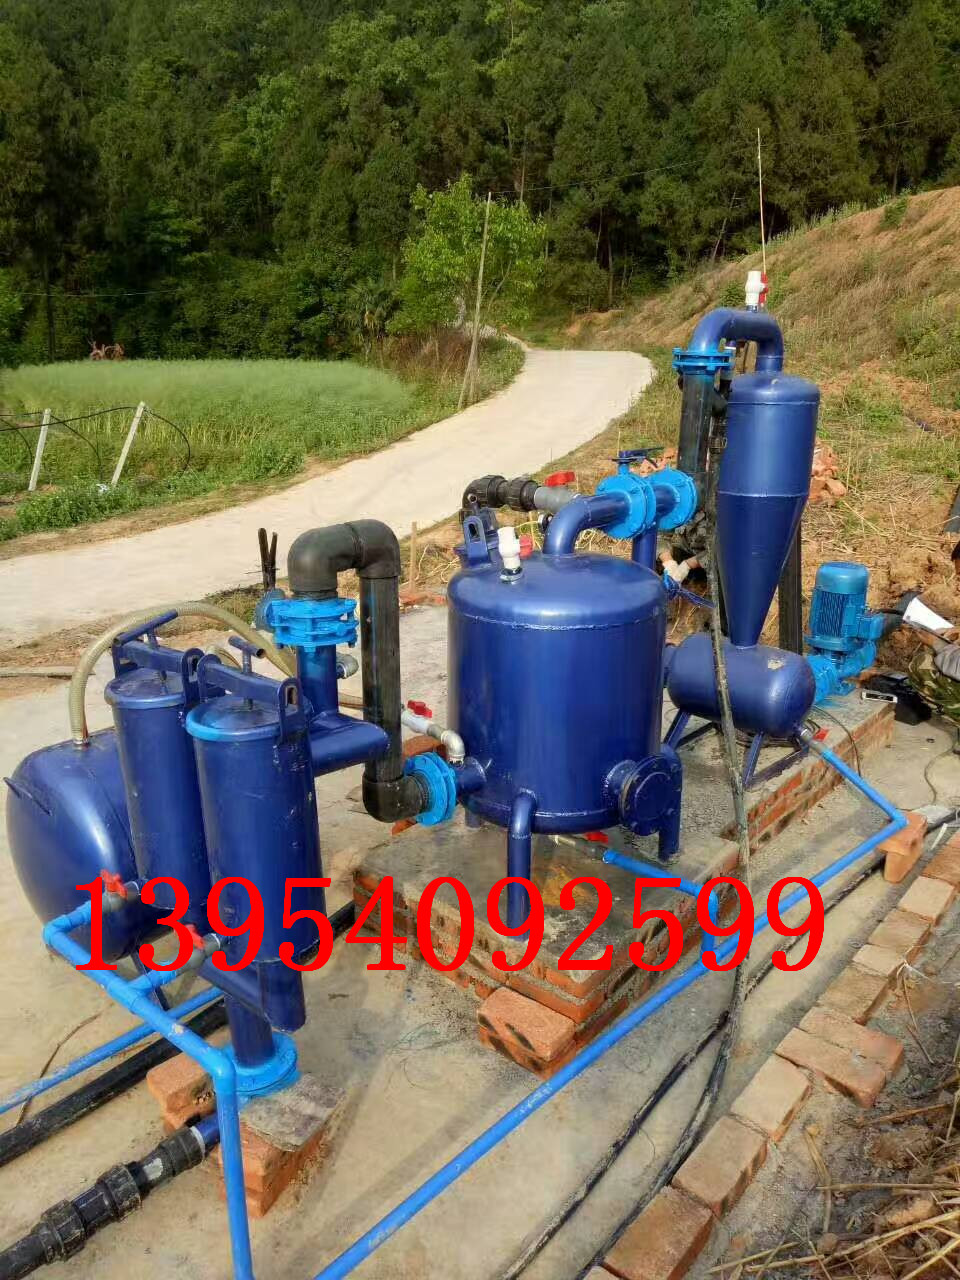 节水灌溉中滴灌系统造价滴灌系统技术滴灌系统安装